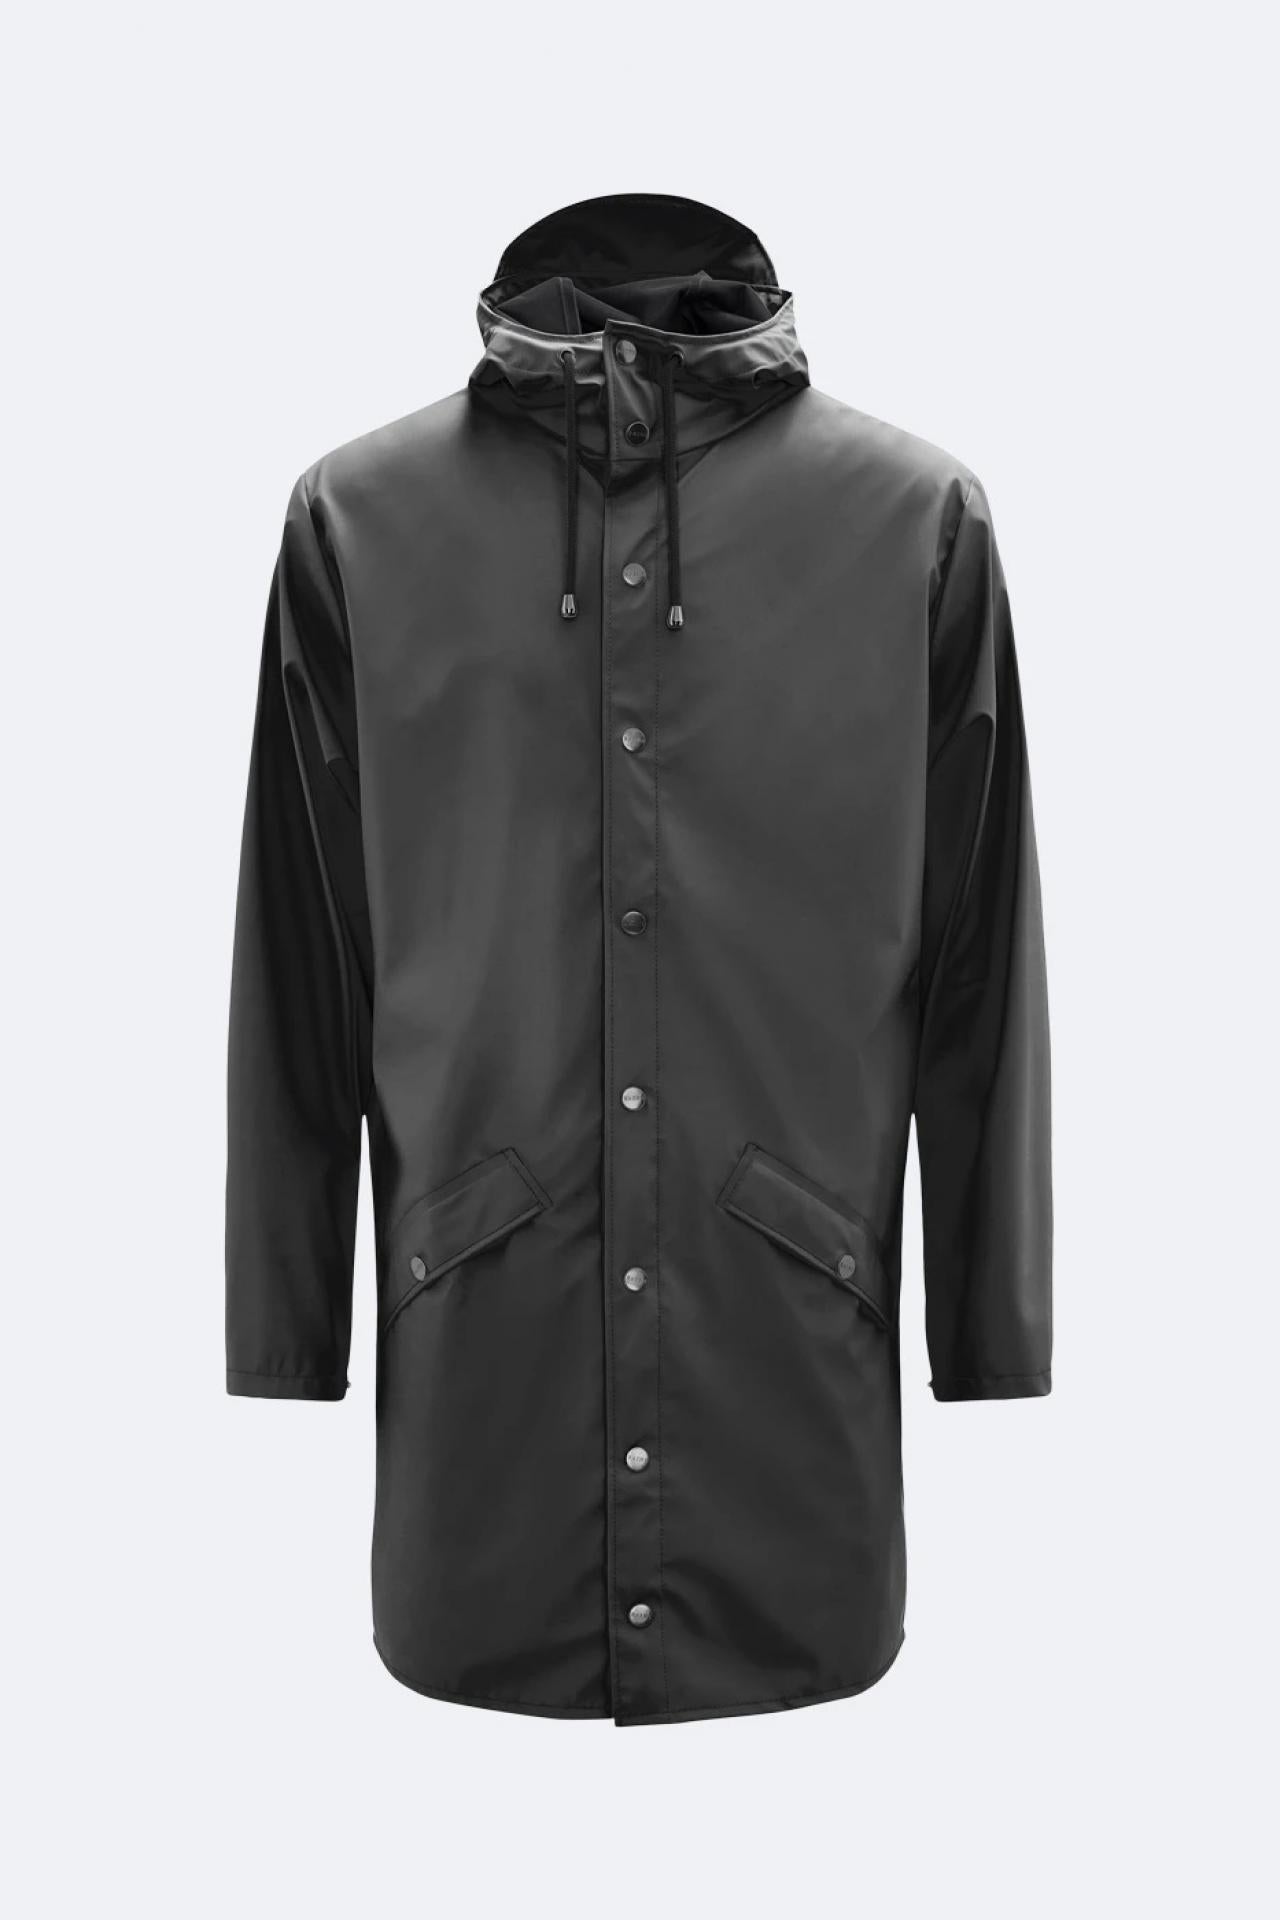 Rains Regenjacke Long Jacket 1202 Schwarz - Größe: XS/S